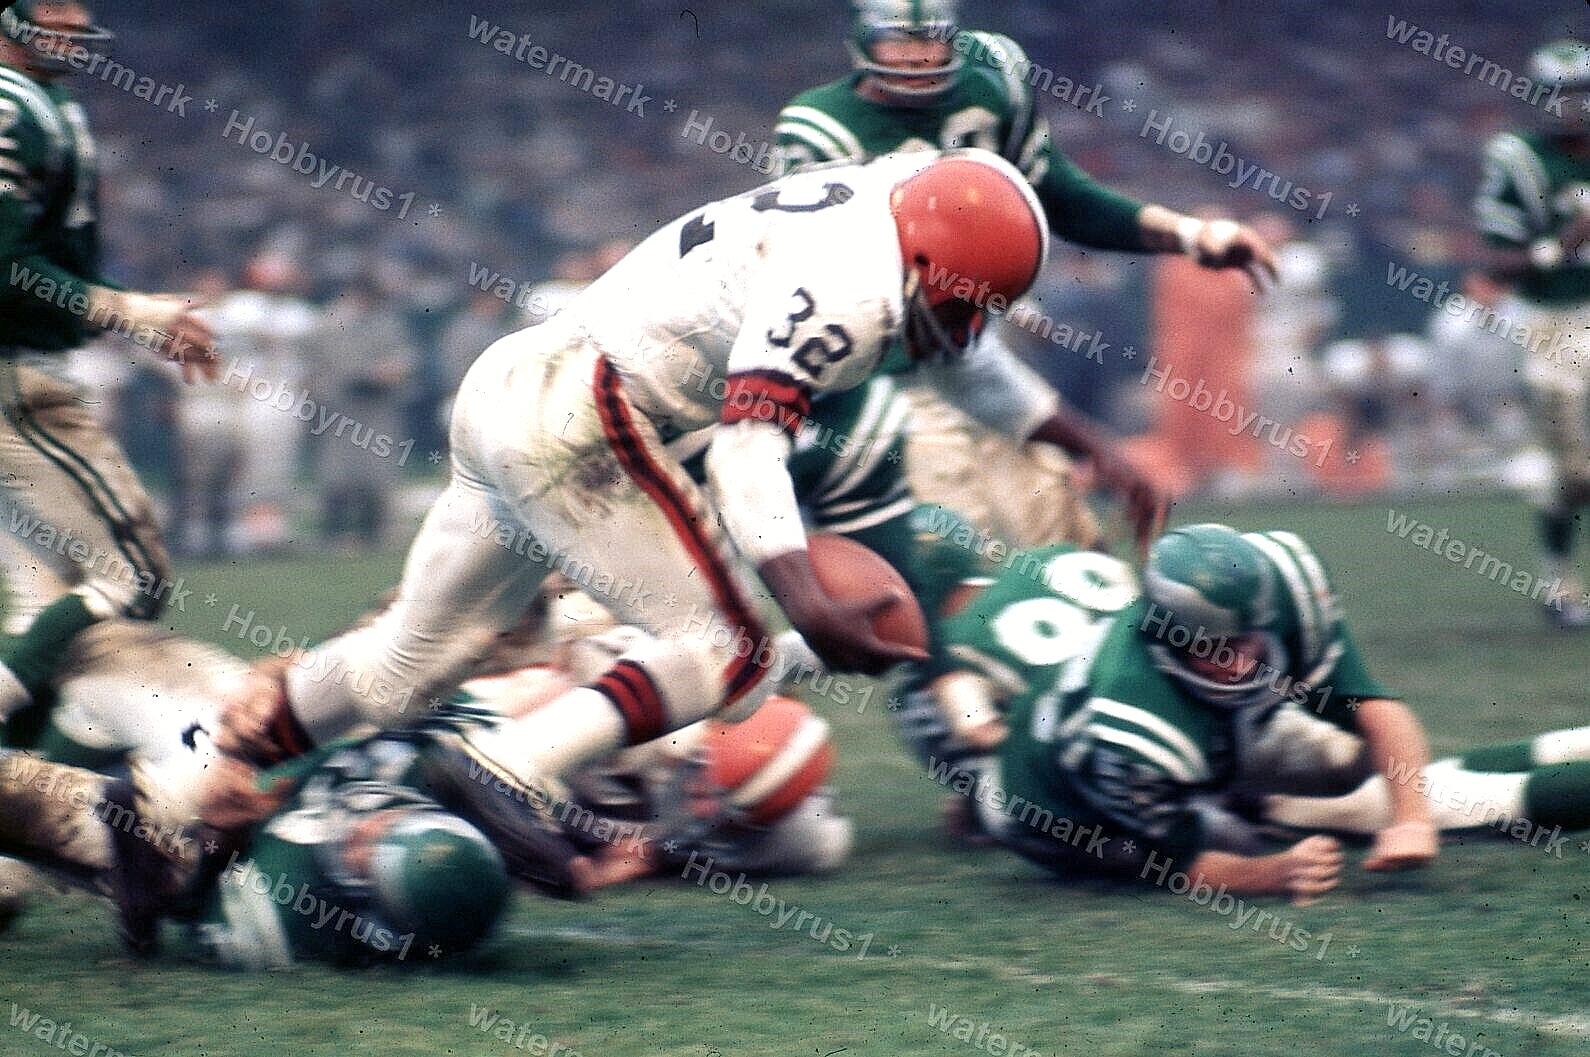 JIM BROWN Cleveland vs Philadelphia Eagles NFL FB 1965 Original 35mm Photo Slide